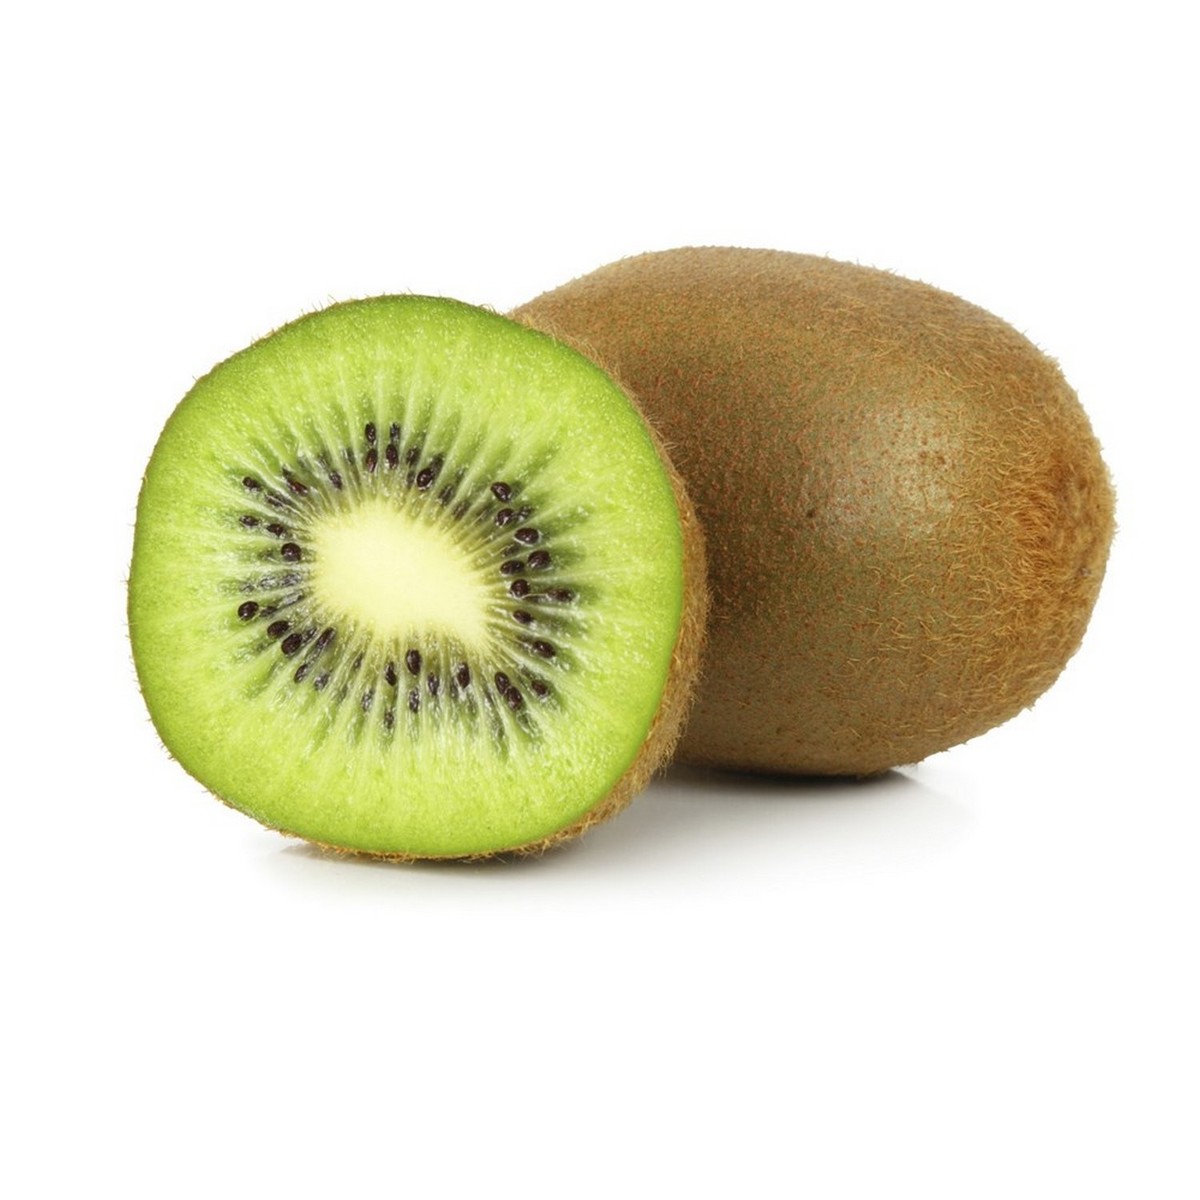 Kiwi Fruit Chile 500 g